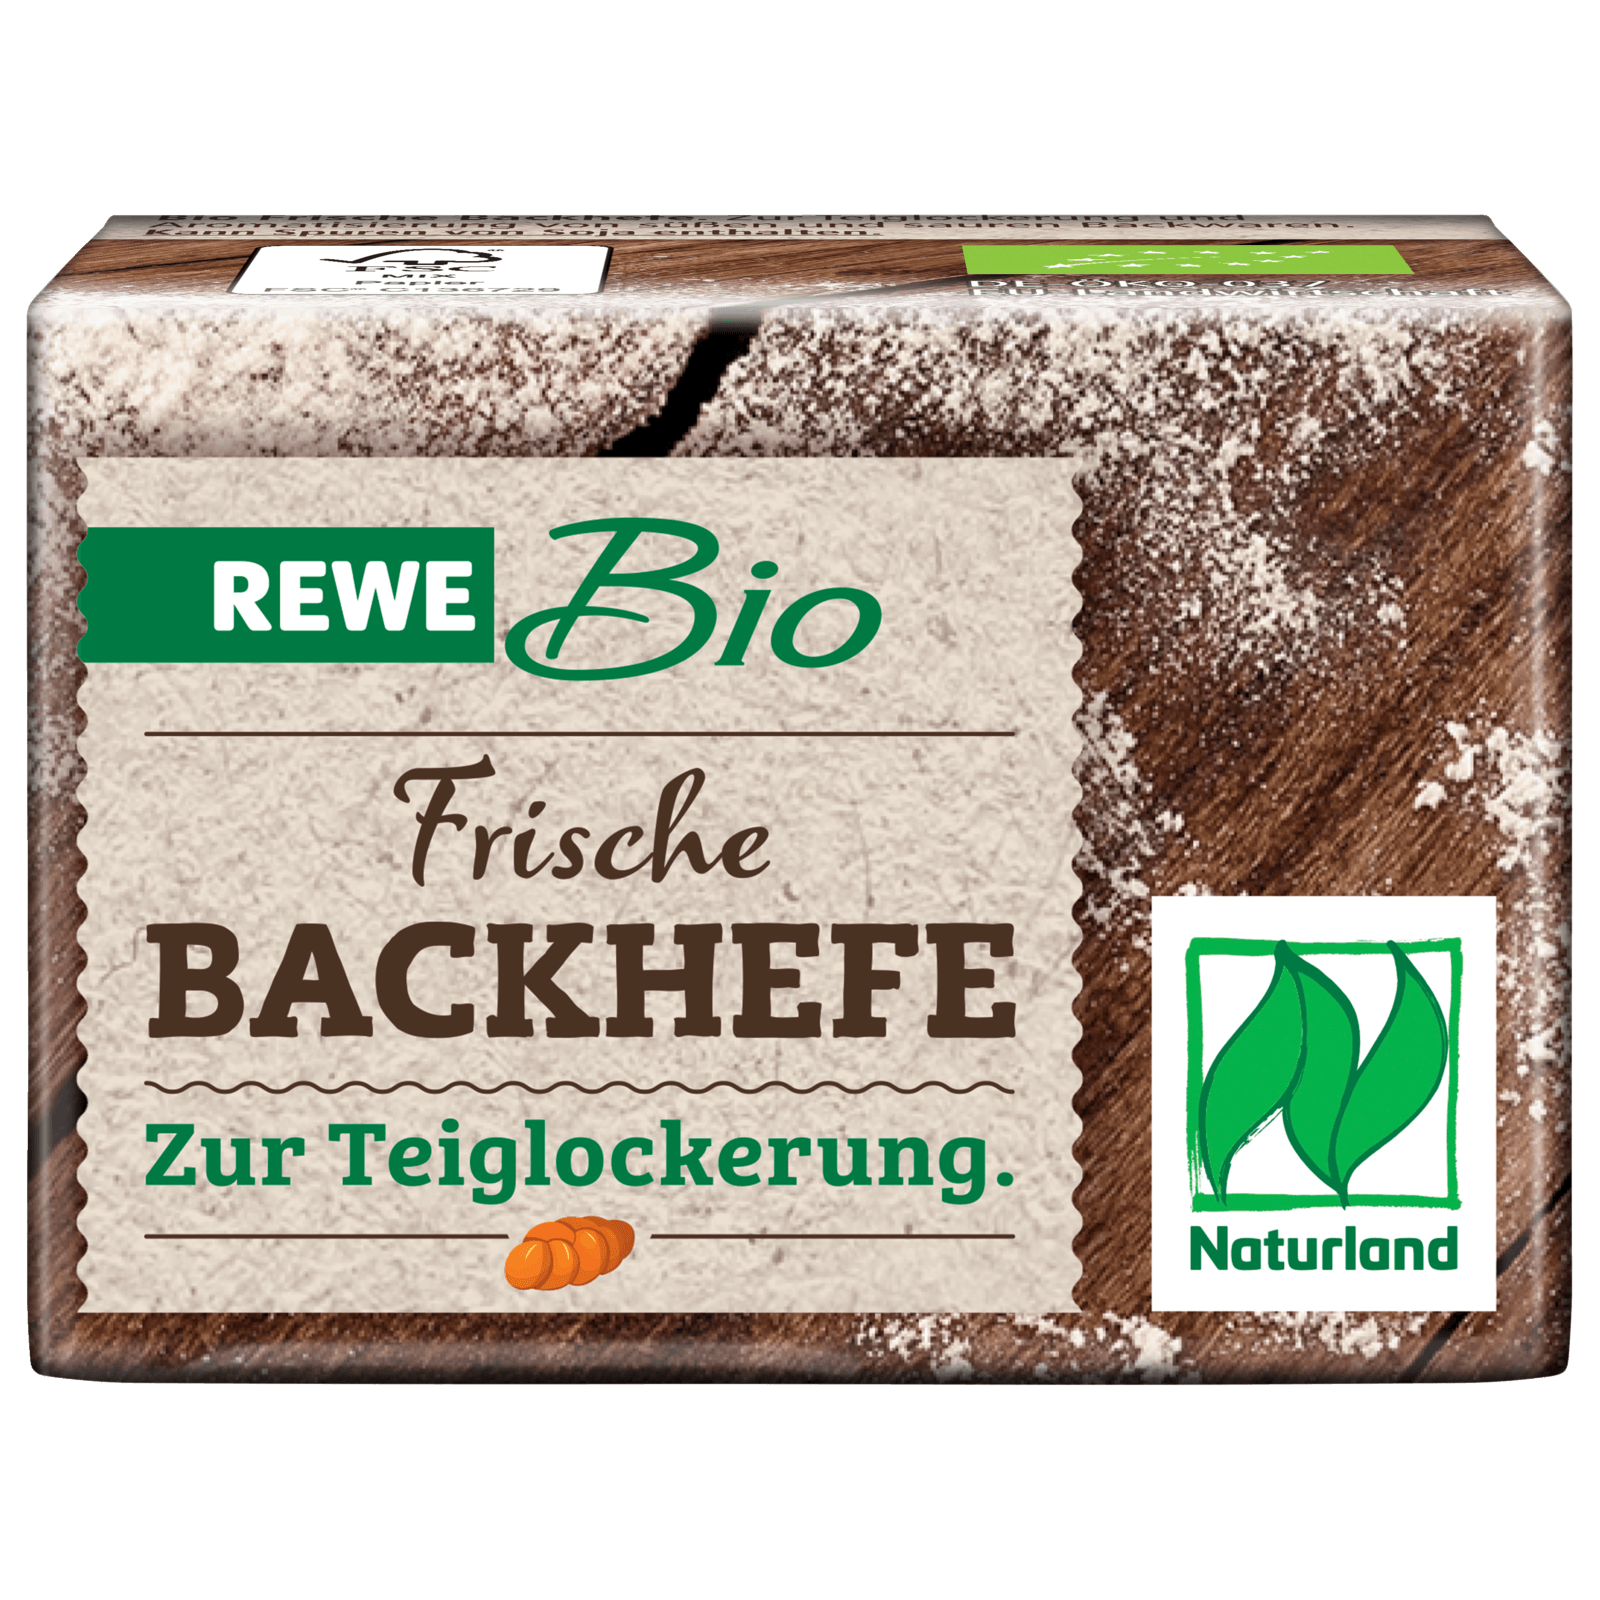 REWE Bio Frische Backhefe 42g